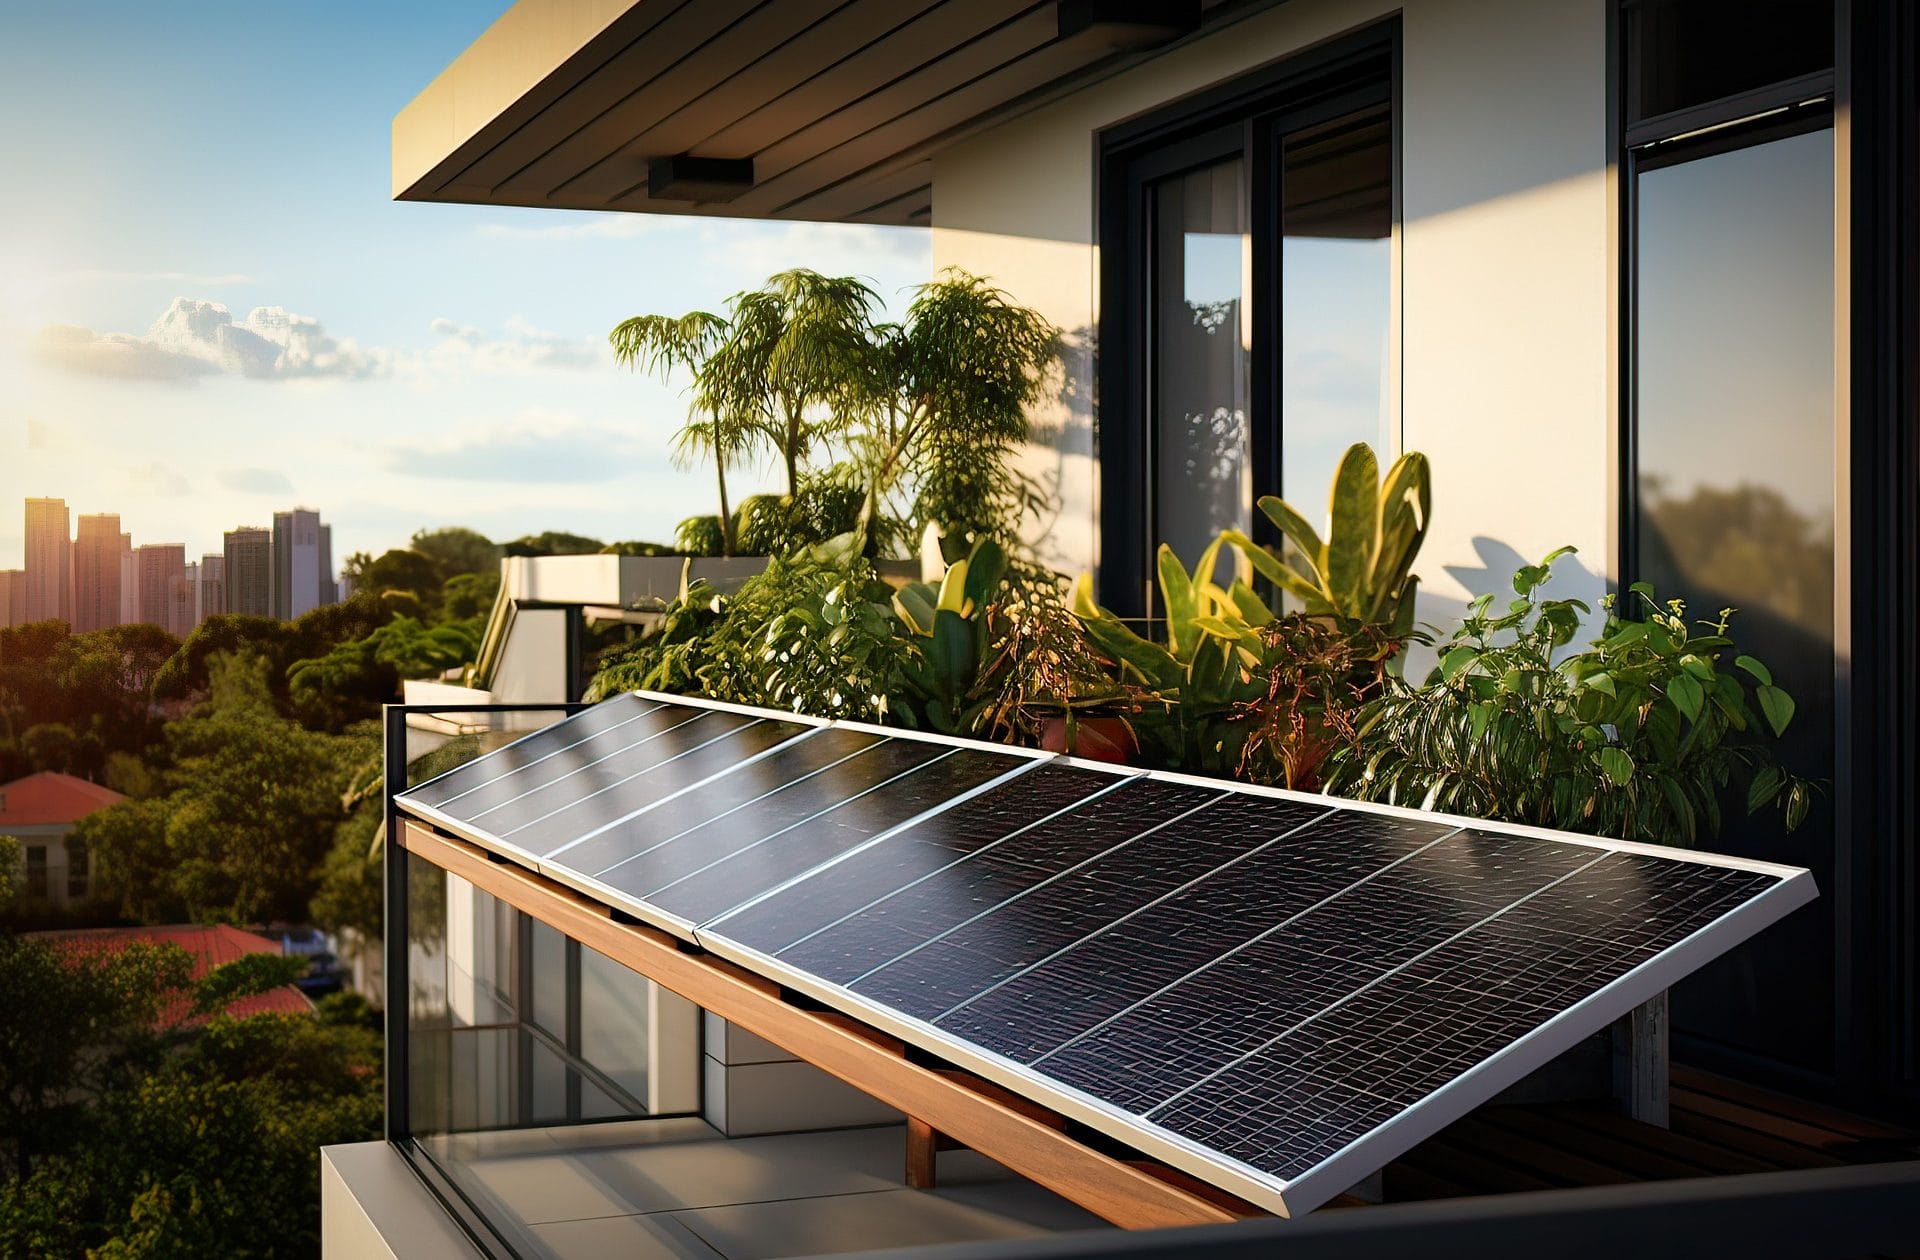 Balkonkraftwerk: eine Mini-Solaranlage auf dem Balkon dient der eigenen Stromerzeugung.